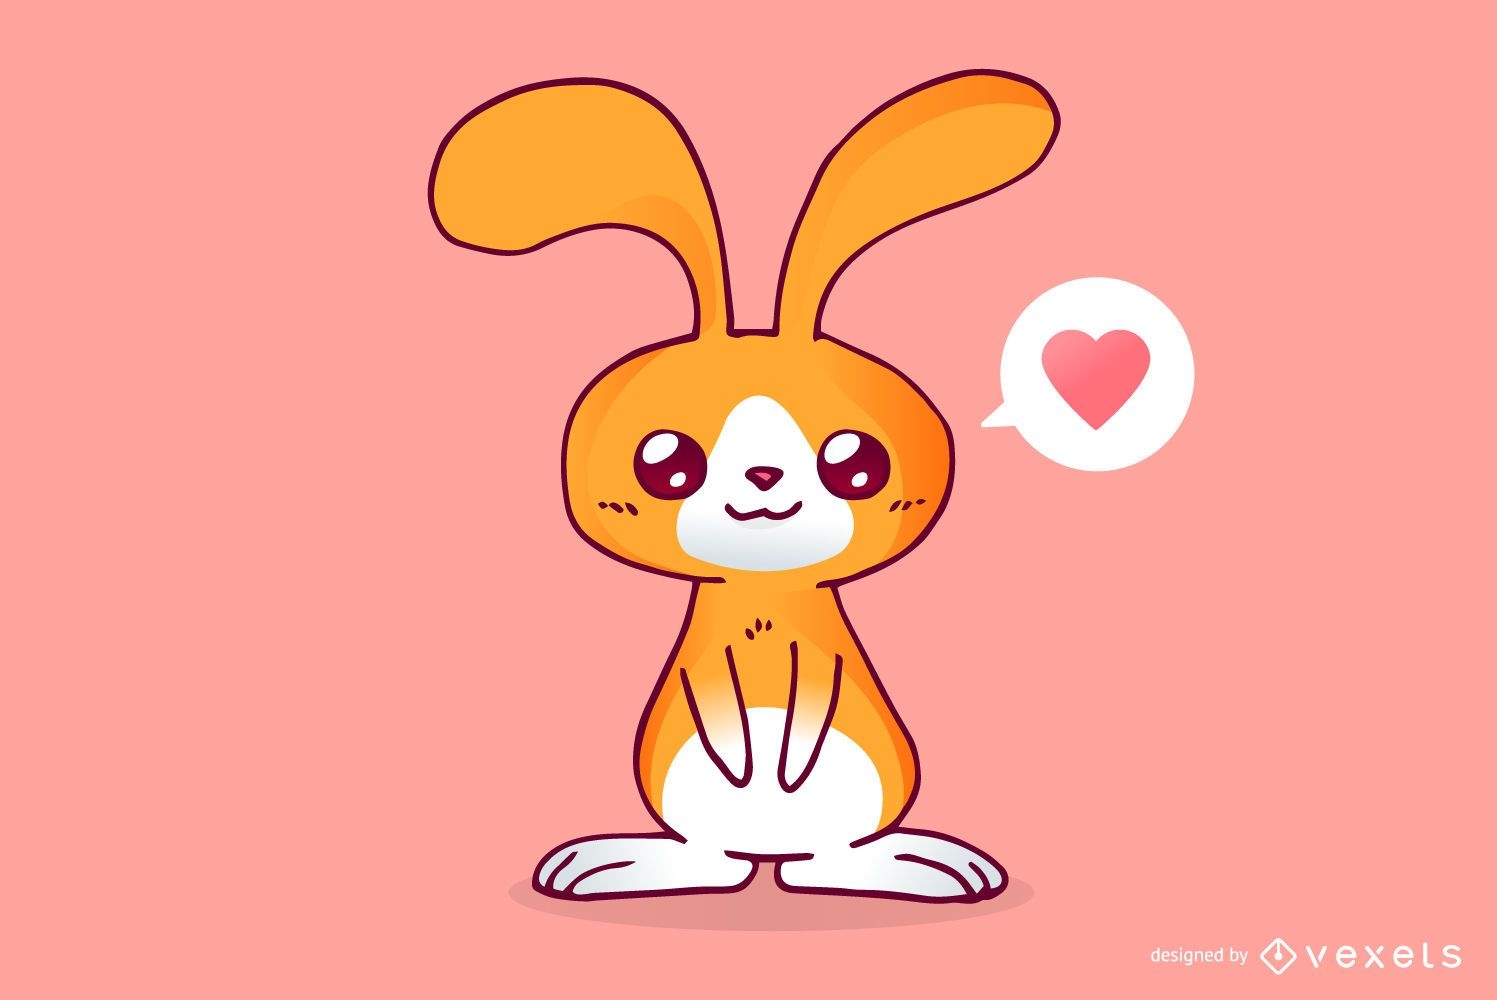 ilustração de coelho fofo coelho kawaii chibi estilo de desenho vetorial  coelho coelhinho dos desenhos animados 17048040 Vetor no Vecteezy